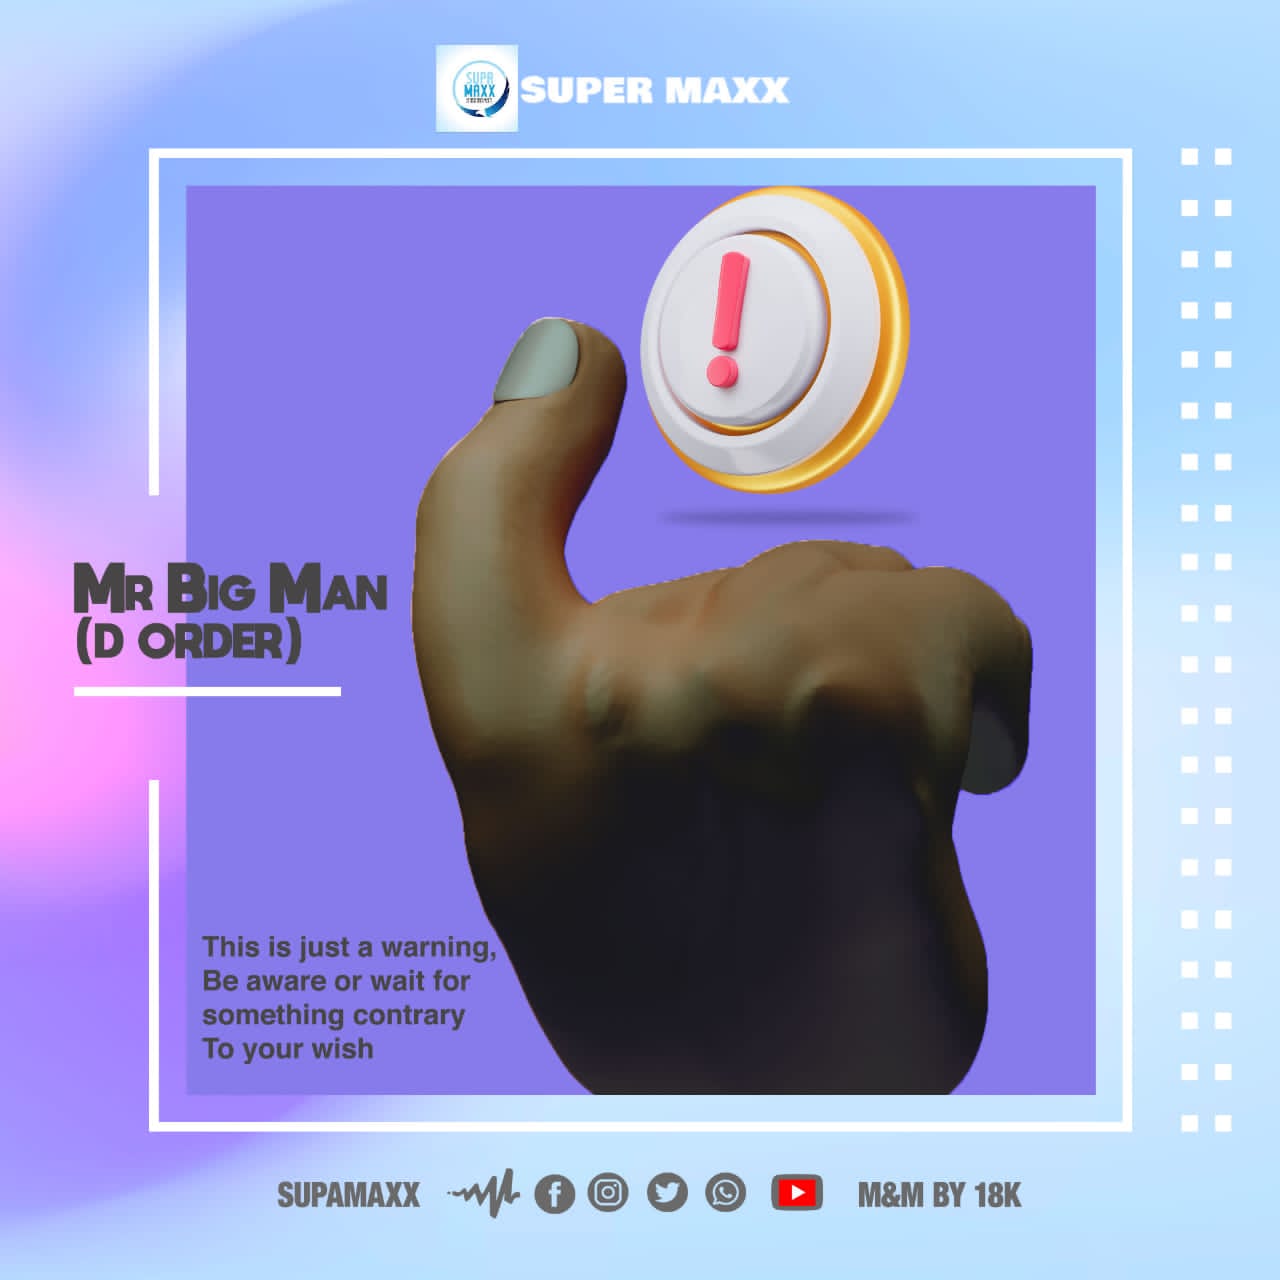 Super Maxx – Mr. Big Man (D Order)